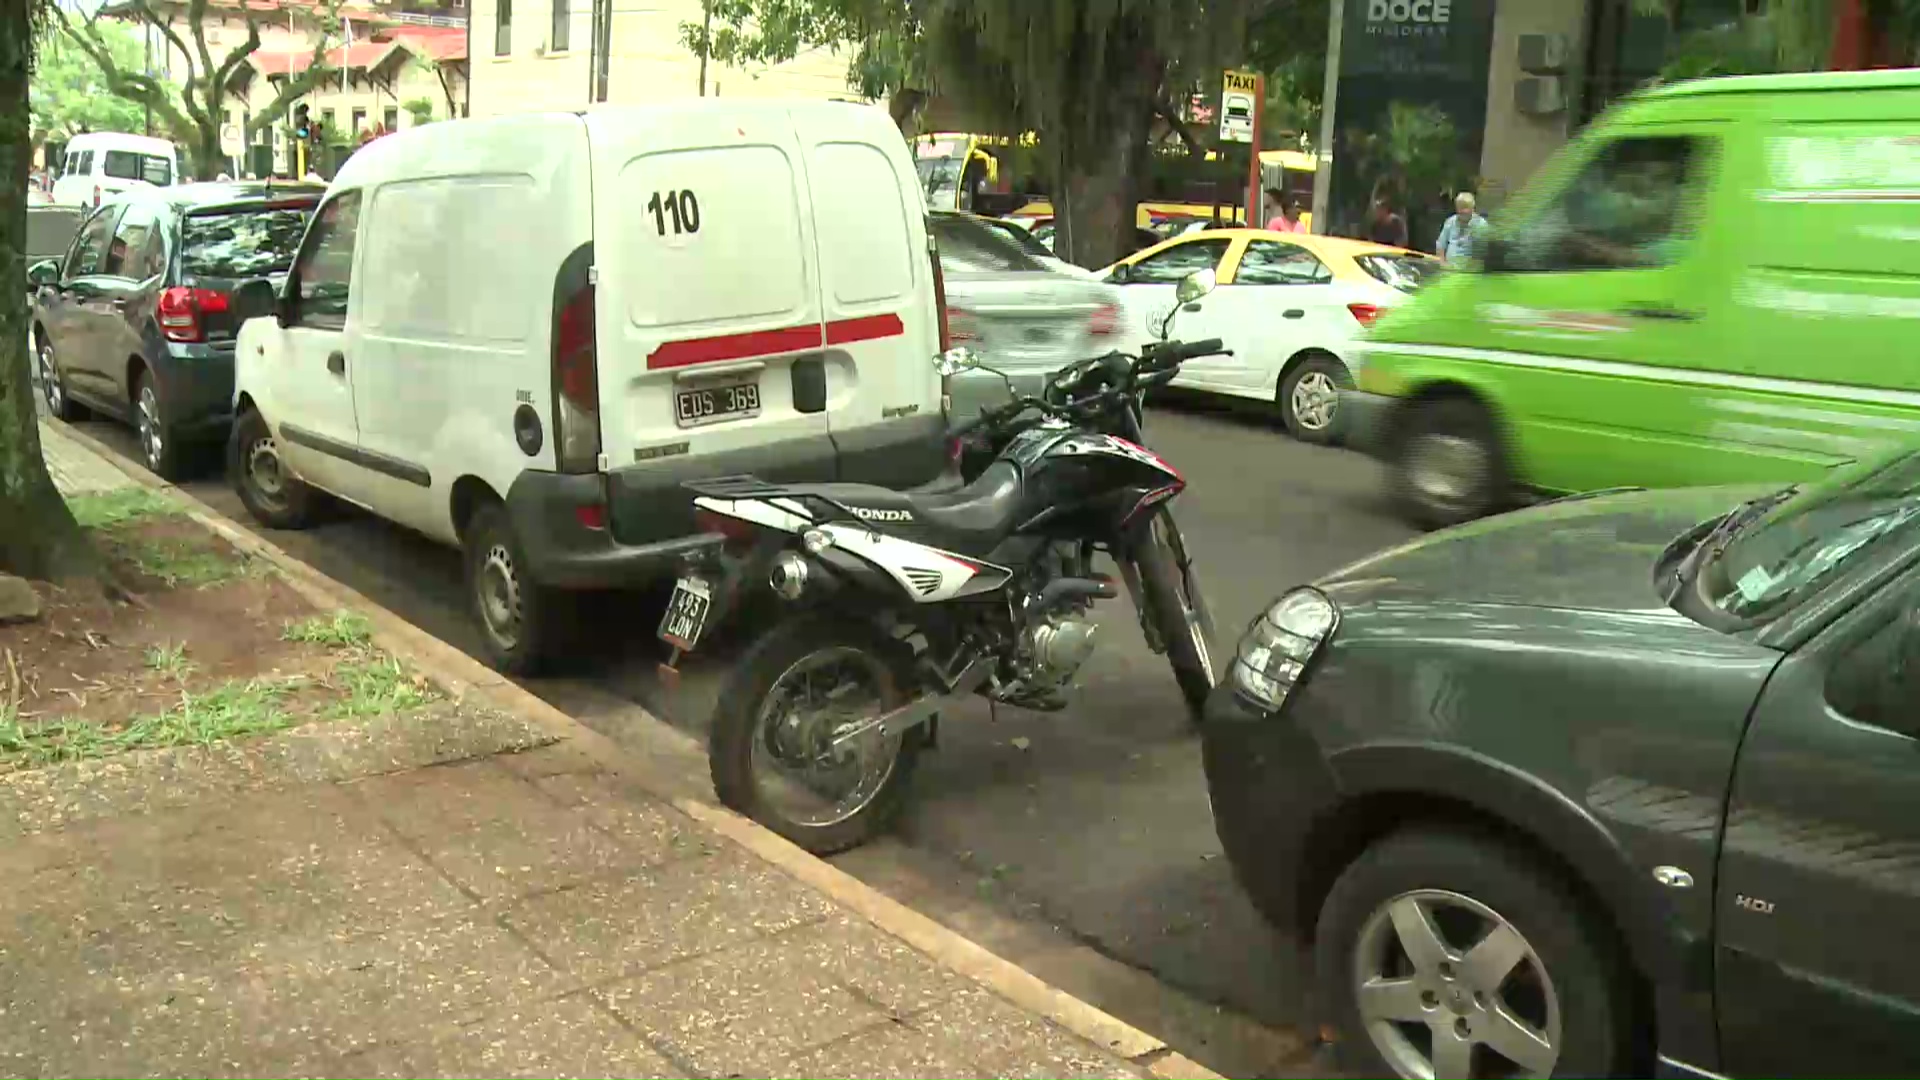 Concejal afirma que no existe ordenanza para multar a motos que estacionen fuera de los lugares asignados